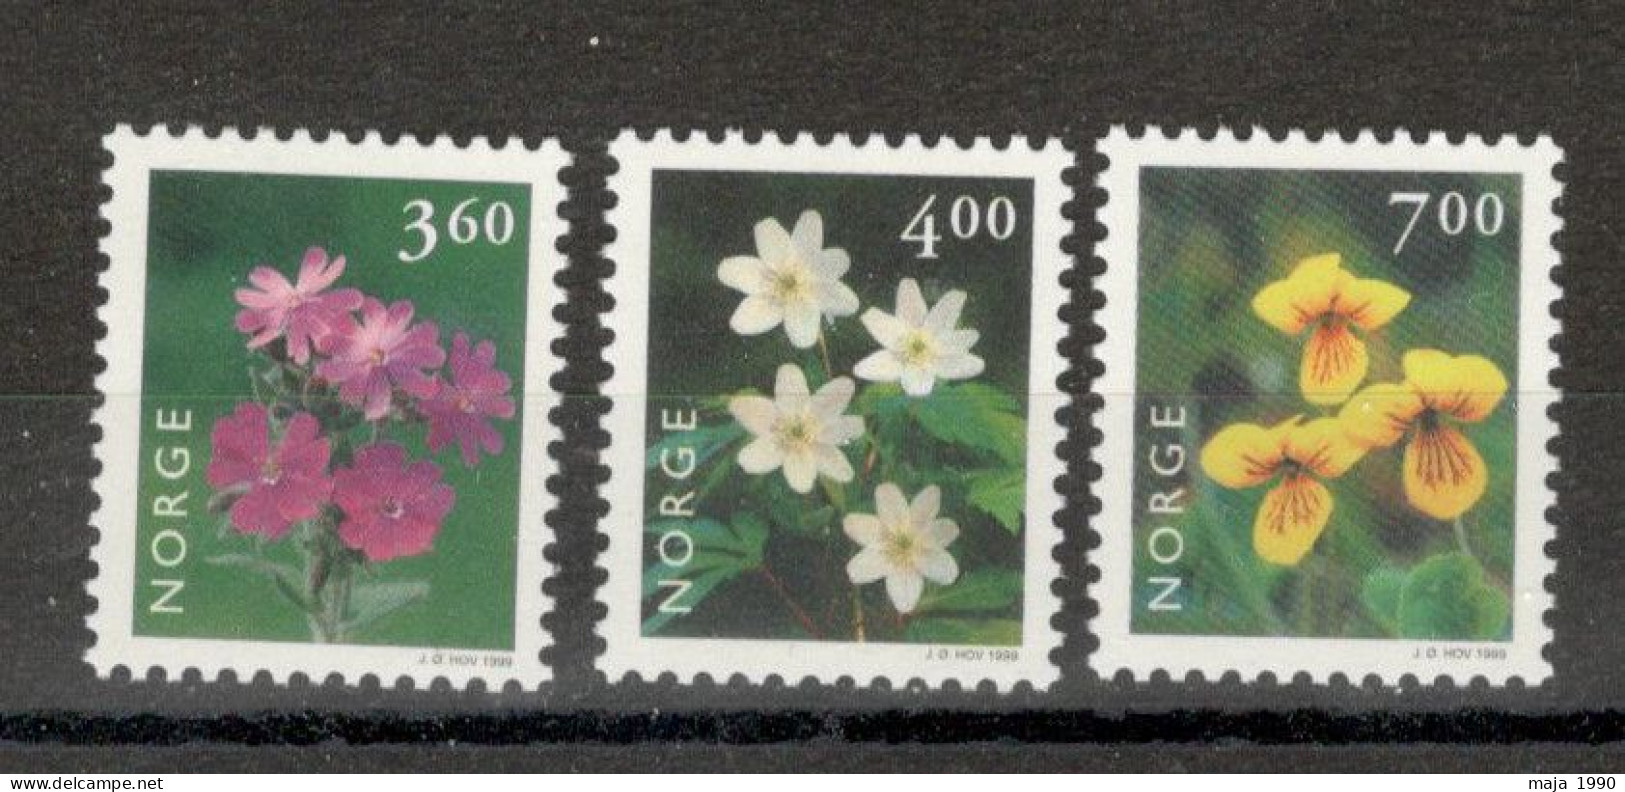 NORWAY - MNH SET - FLORA - FLOWERS - Mi.No. 1303/05 - 1999. - Ongebruikt